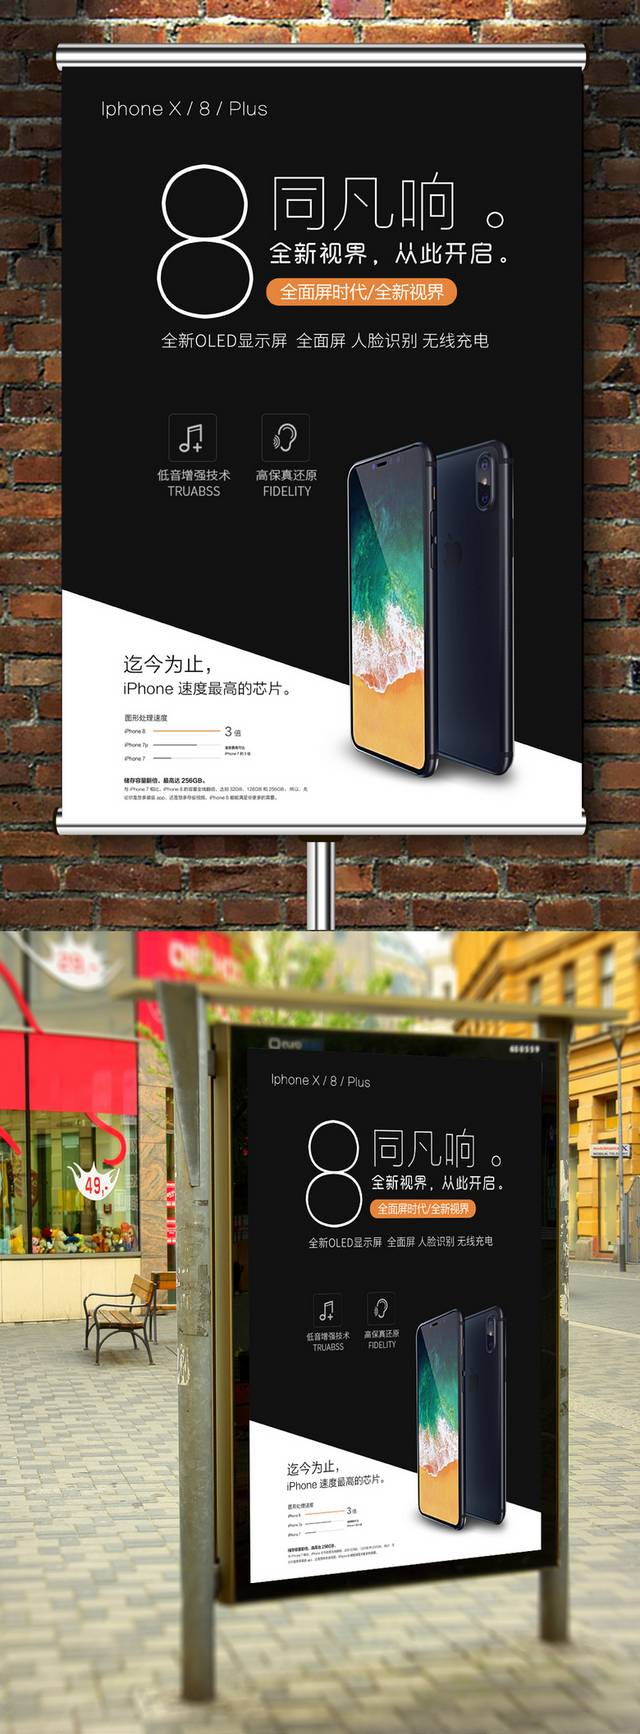 黑色精美iPhone8X预售海报